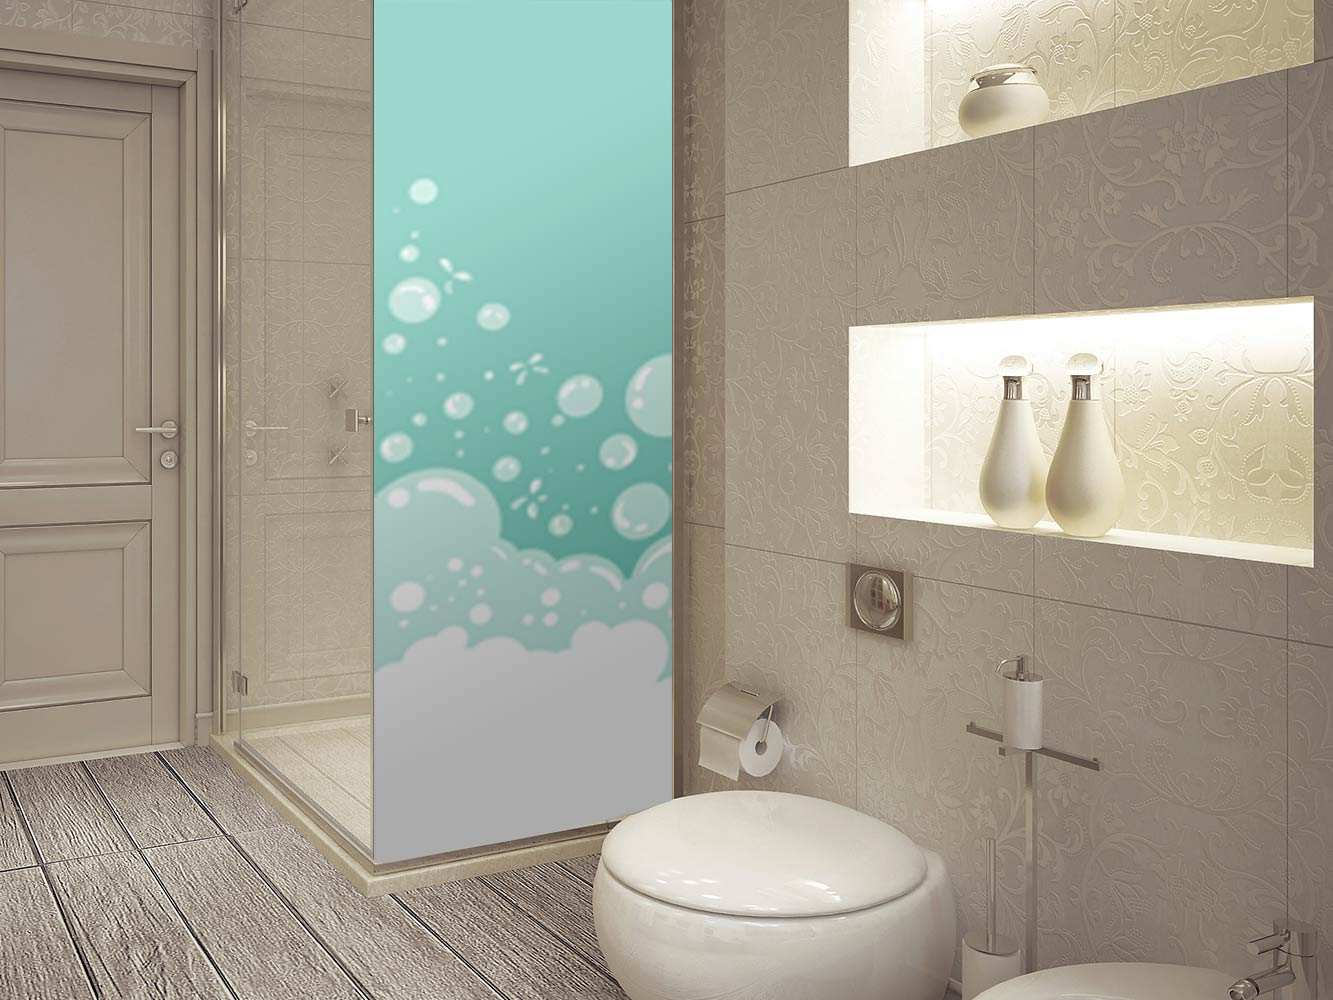 Vinilos para mamparas de ducha: Decora tu baño con diferentes estilos -  Tienda de Mamparas de Baño